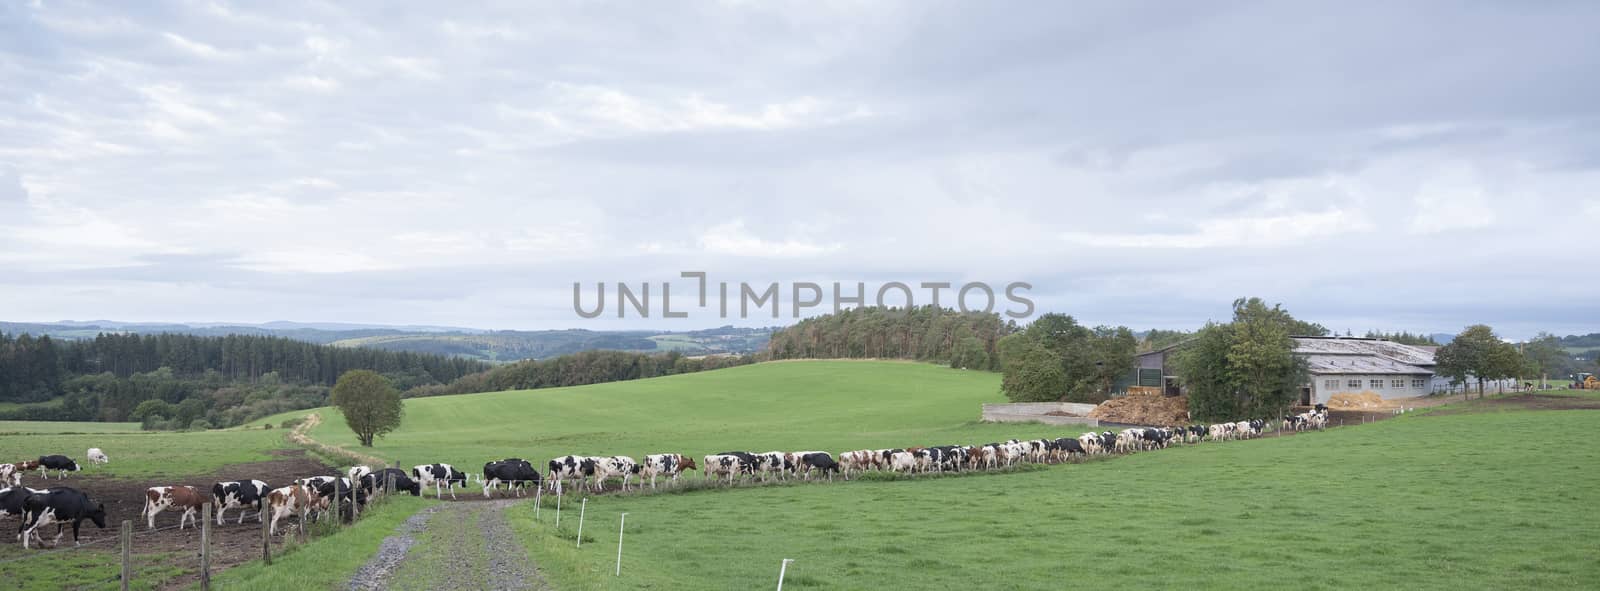 long row of cows in rural landscape of german eifel by ahavelaar